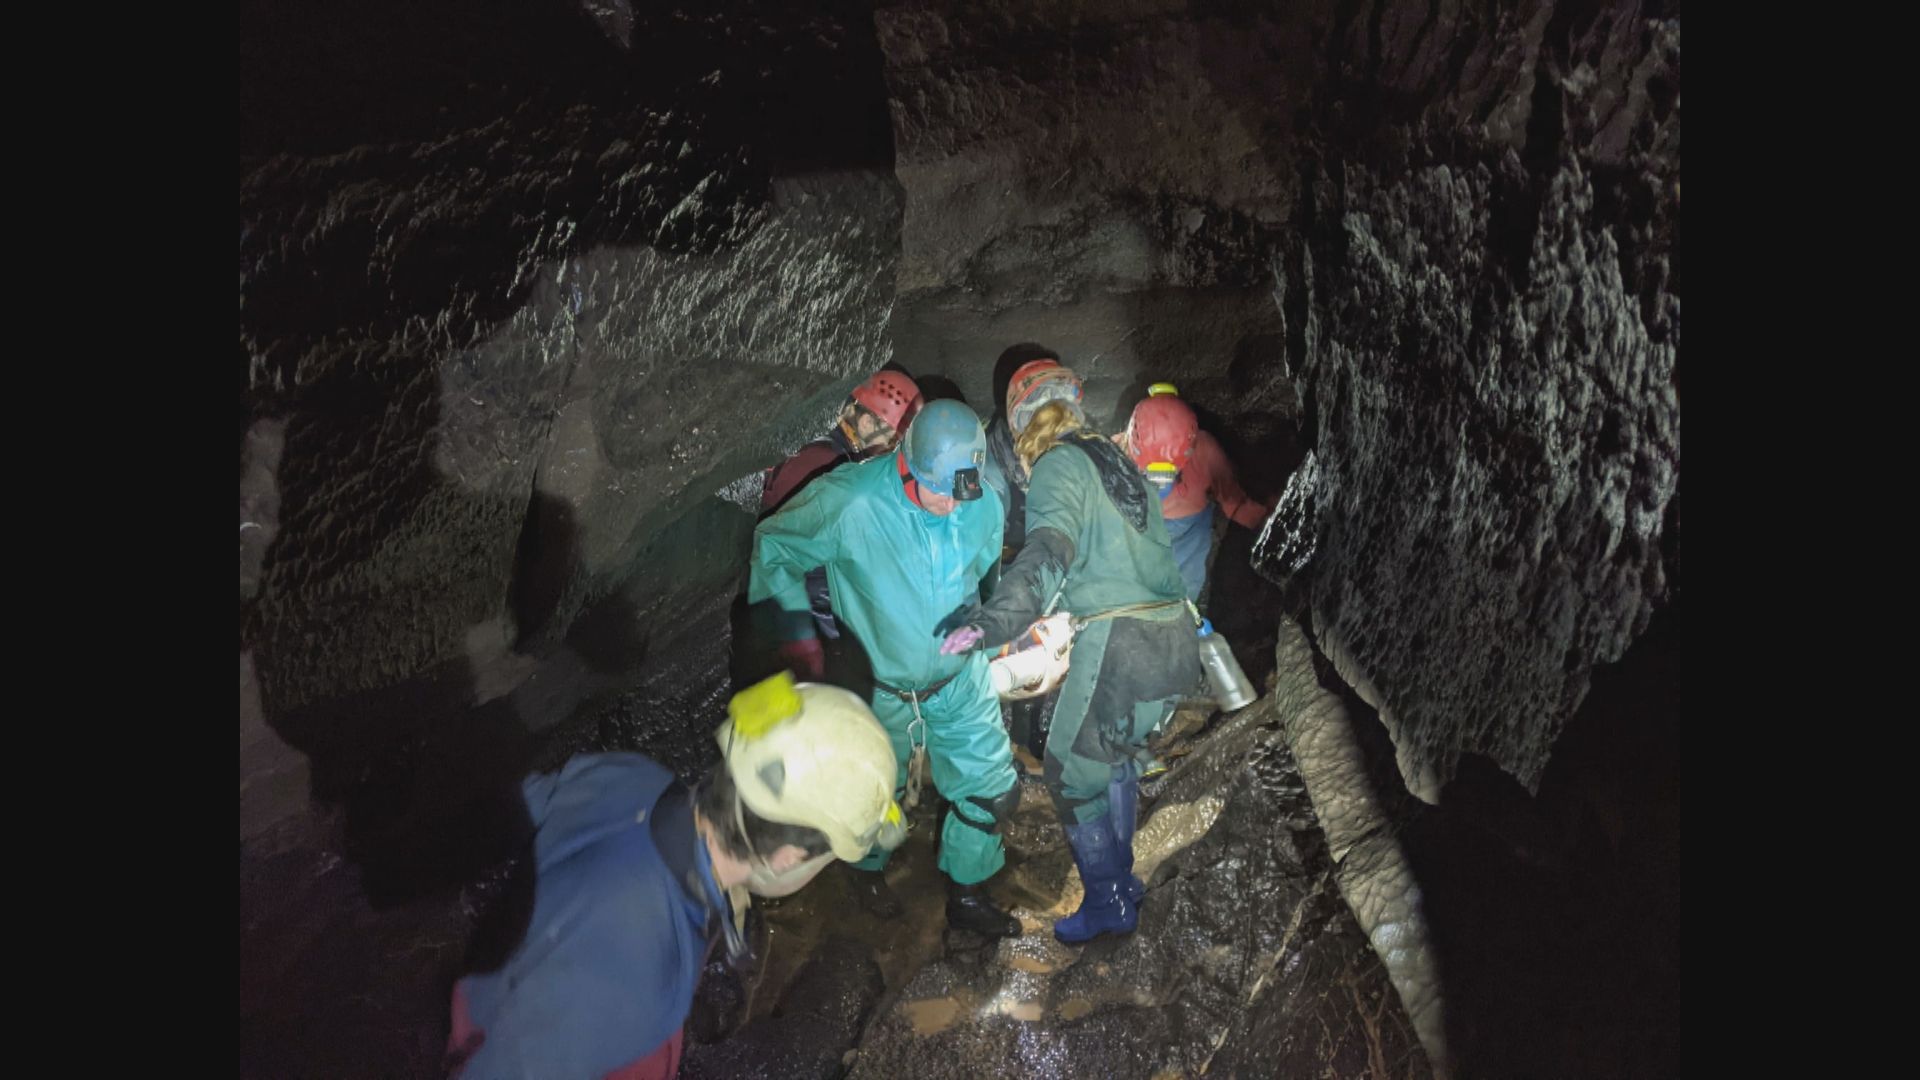 【環球薈報】男子困英國威爾士洞穴54小時後獲救